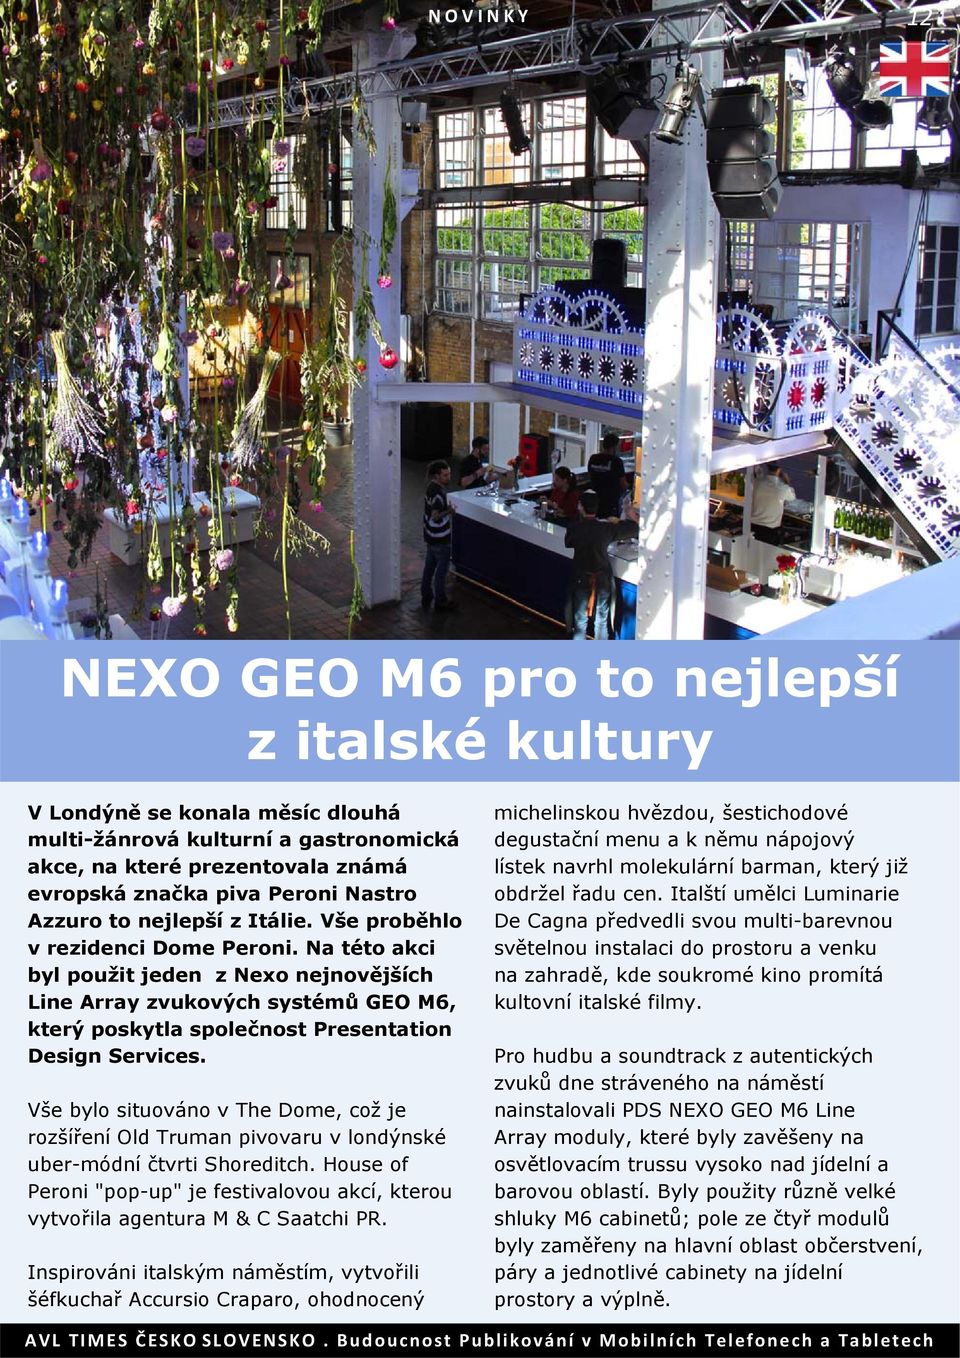 Na této akci byl použit jeden z Nexo nejnovějších Line Array zvukových systémů GEO M6, který poskytla společnost Presentation Design Services.